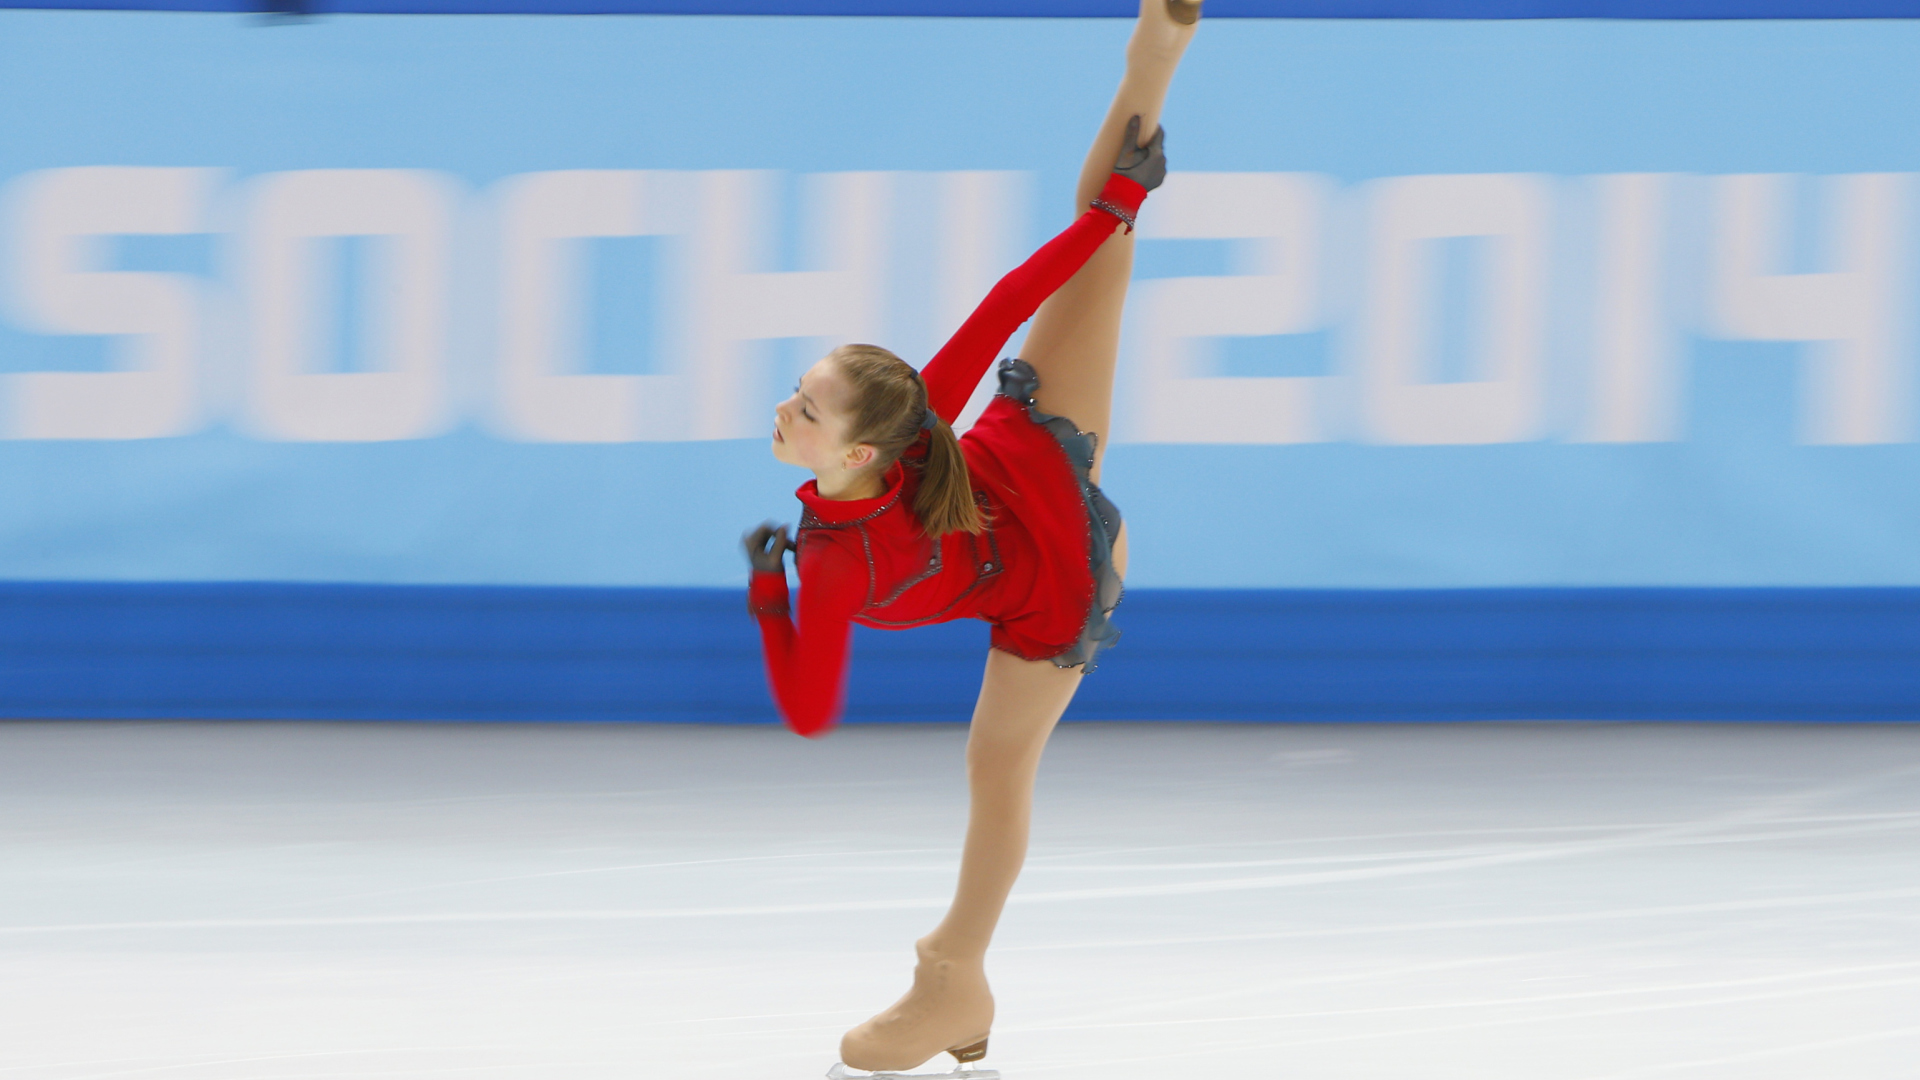 Yulia Lipnitskaya Ice Skater Sochi 2014 wallpaper 1920x1080